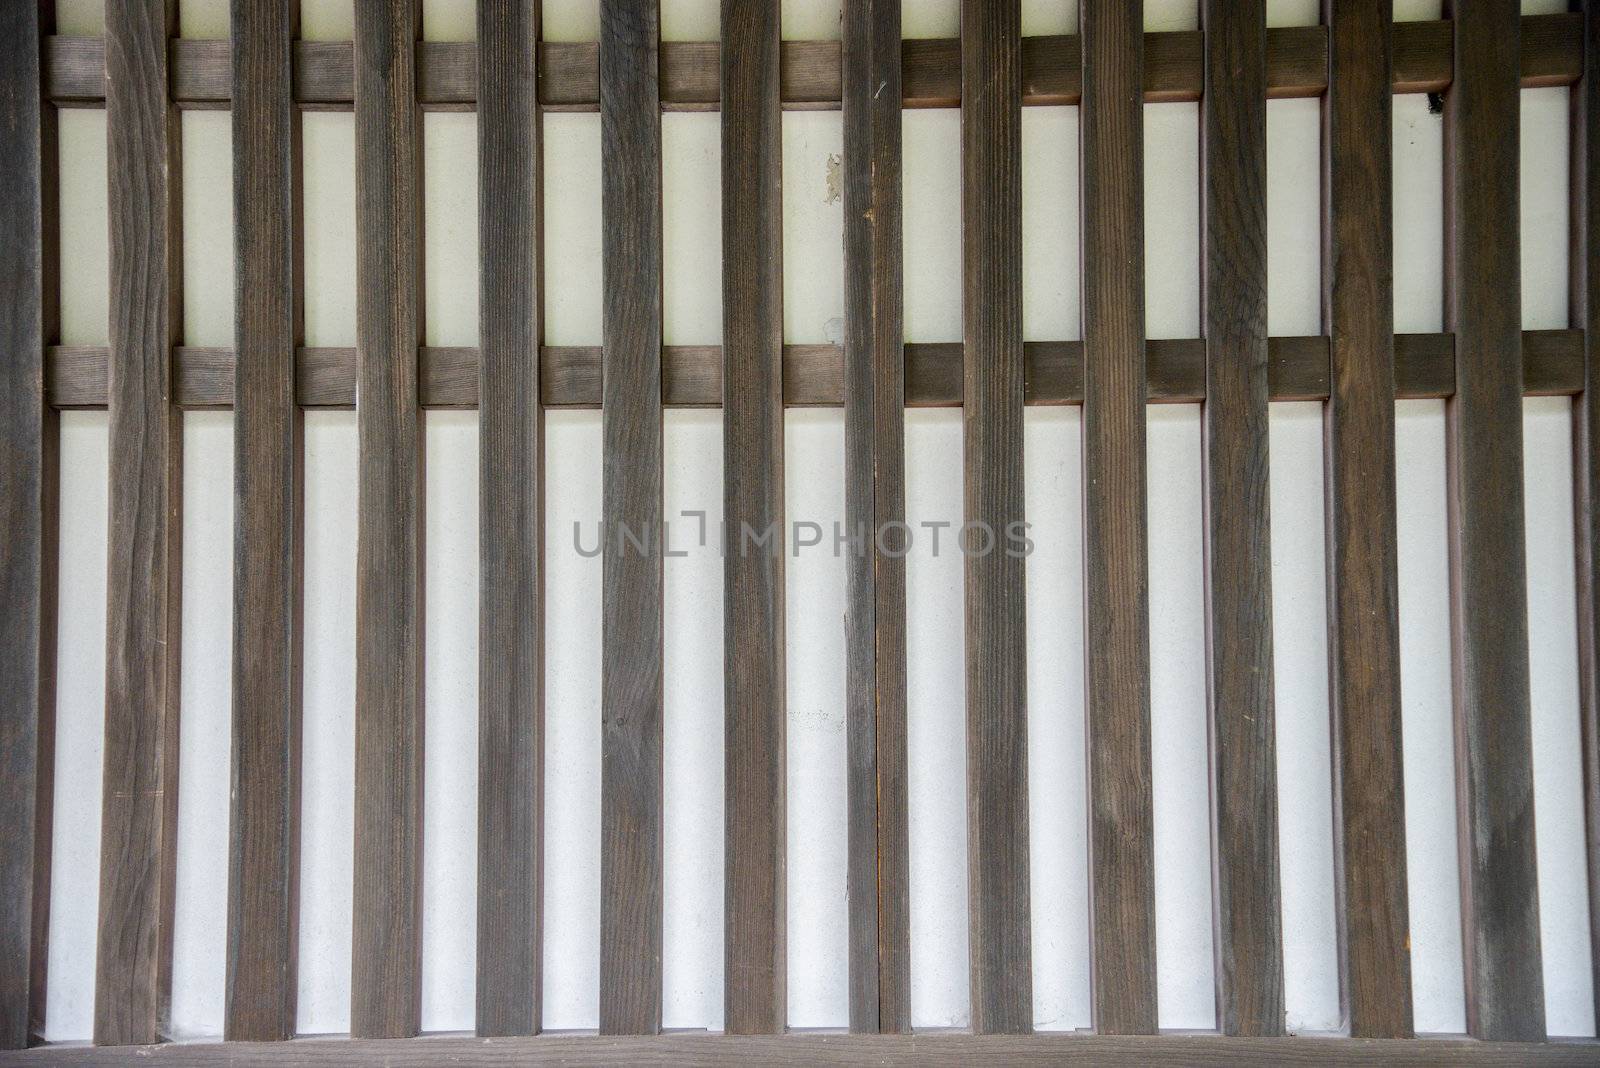 Wooden wall pattern1 by gjeerawut